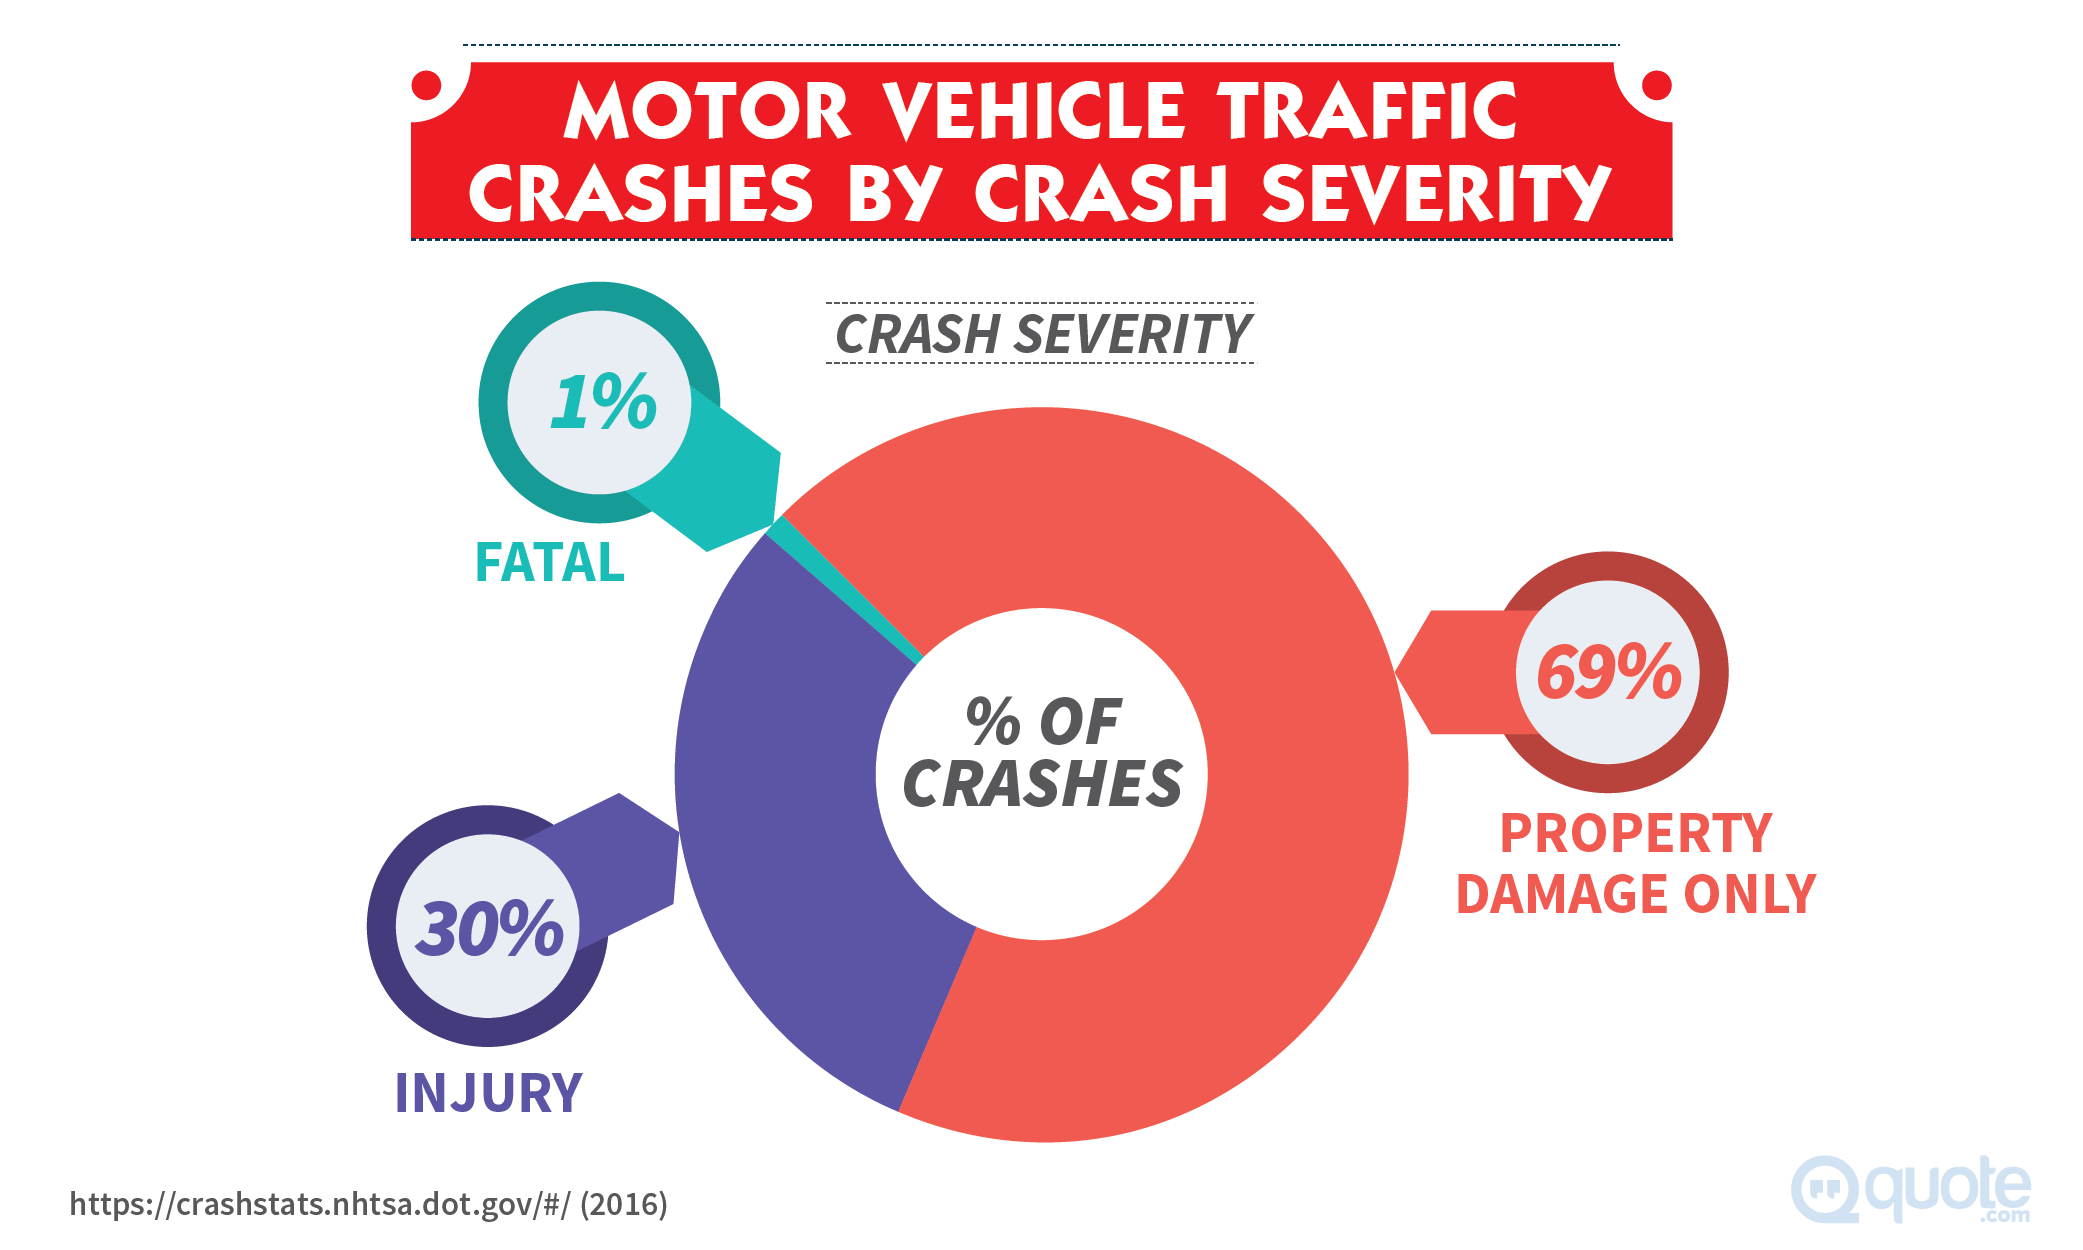 Motor Vehicle Traffic Crashes by Crash Severity